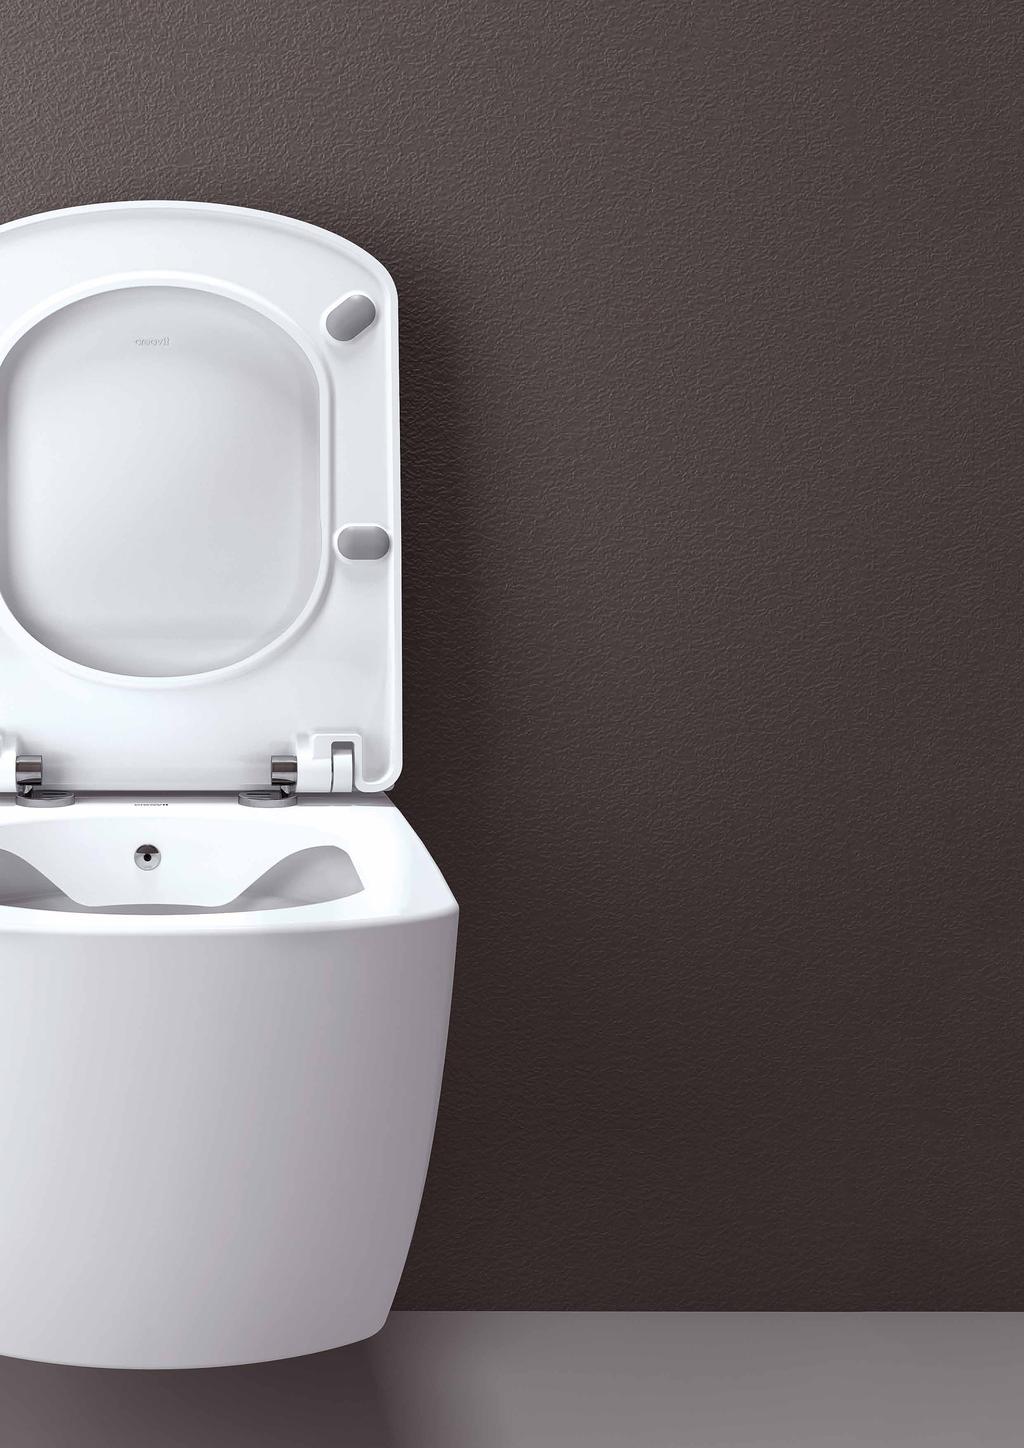 Hygienické a s dlhou životnosťou WC dosky značky Creavit sa vyznačujú dlhou životnosťou a hygienou na vysokej úrovni. Je to vďaka použitým materiálom, novým technológiam a testovaniu.